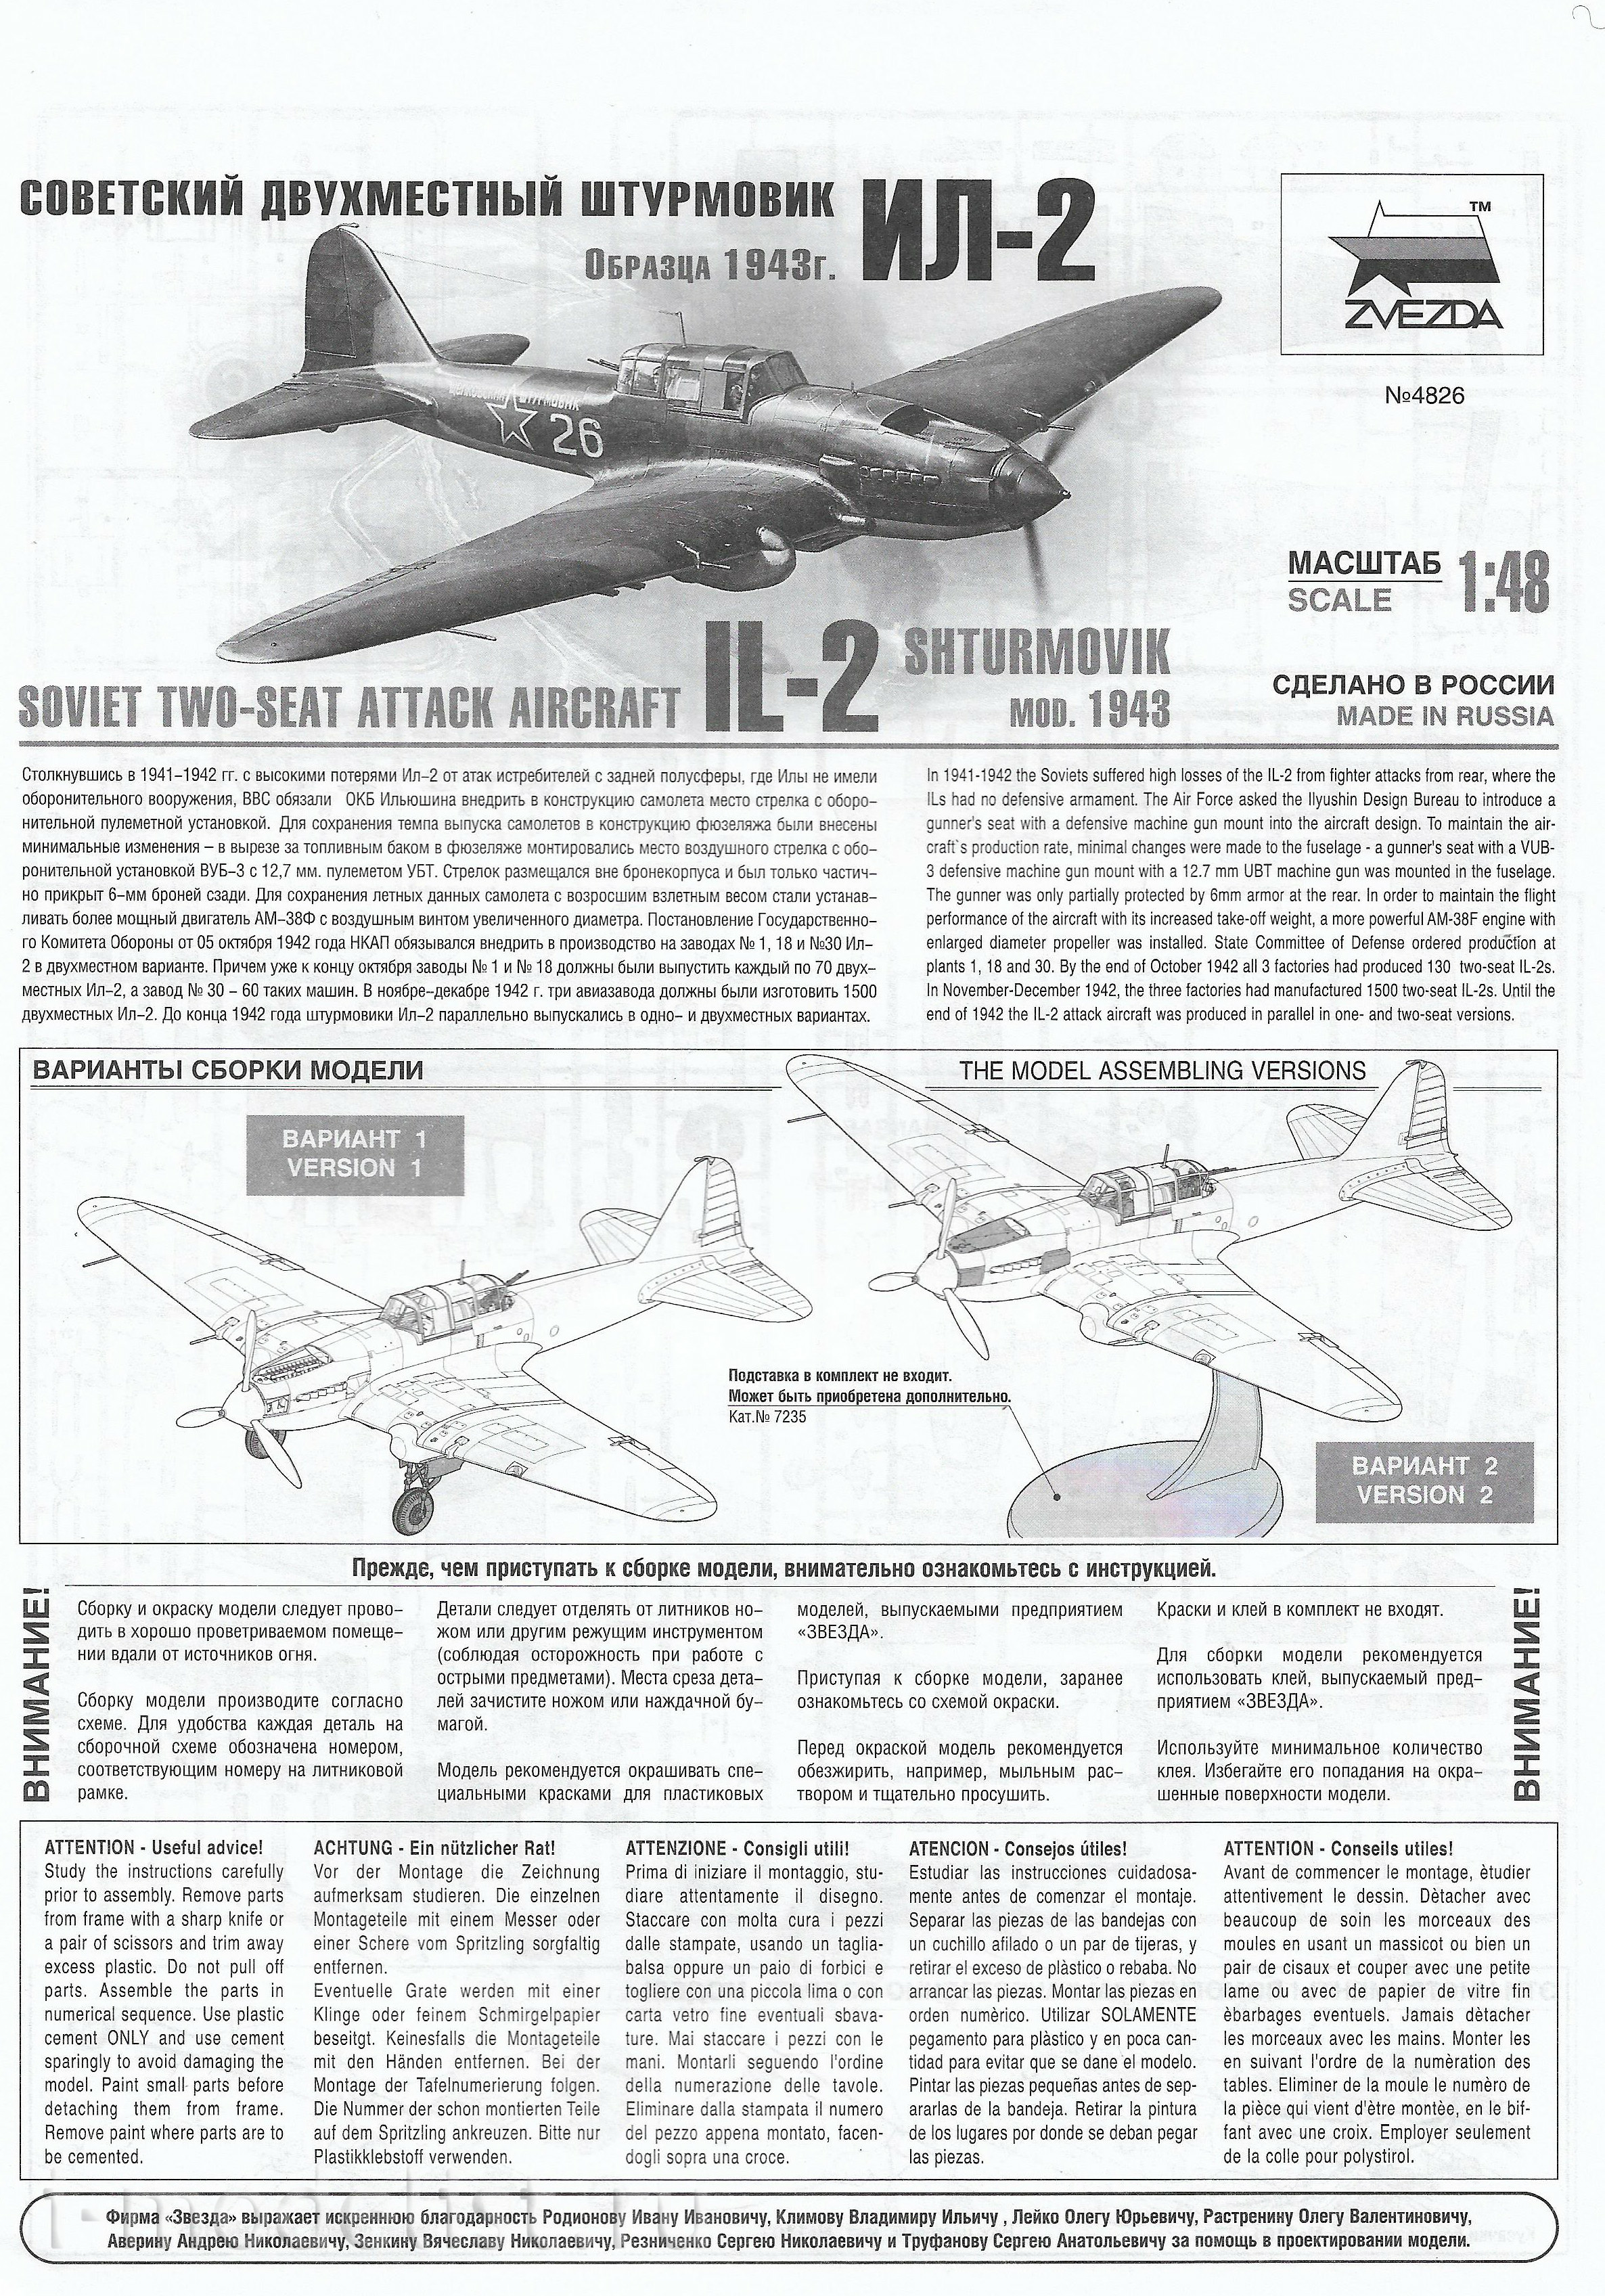 4826 Звезда 1/48 Советский двухместный штурмовик Ил-2 (обр. 1943 г.)